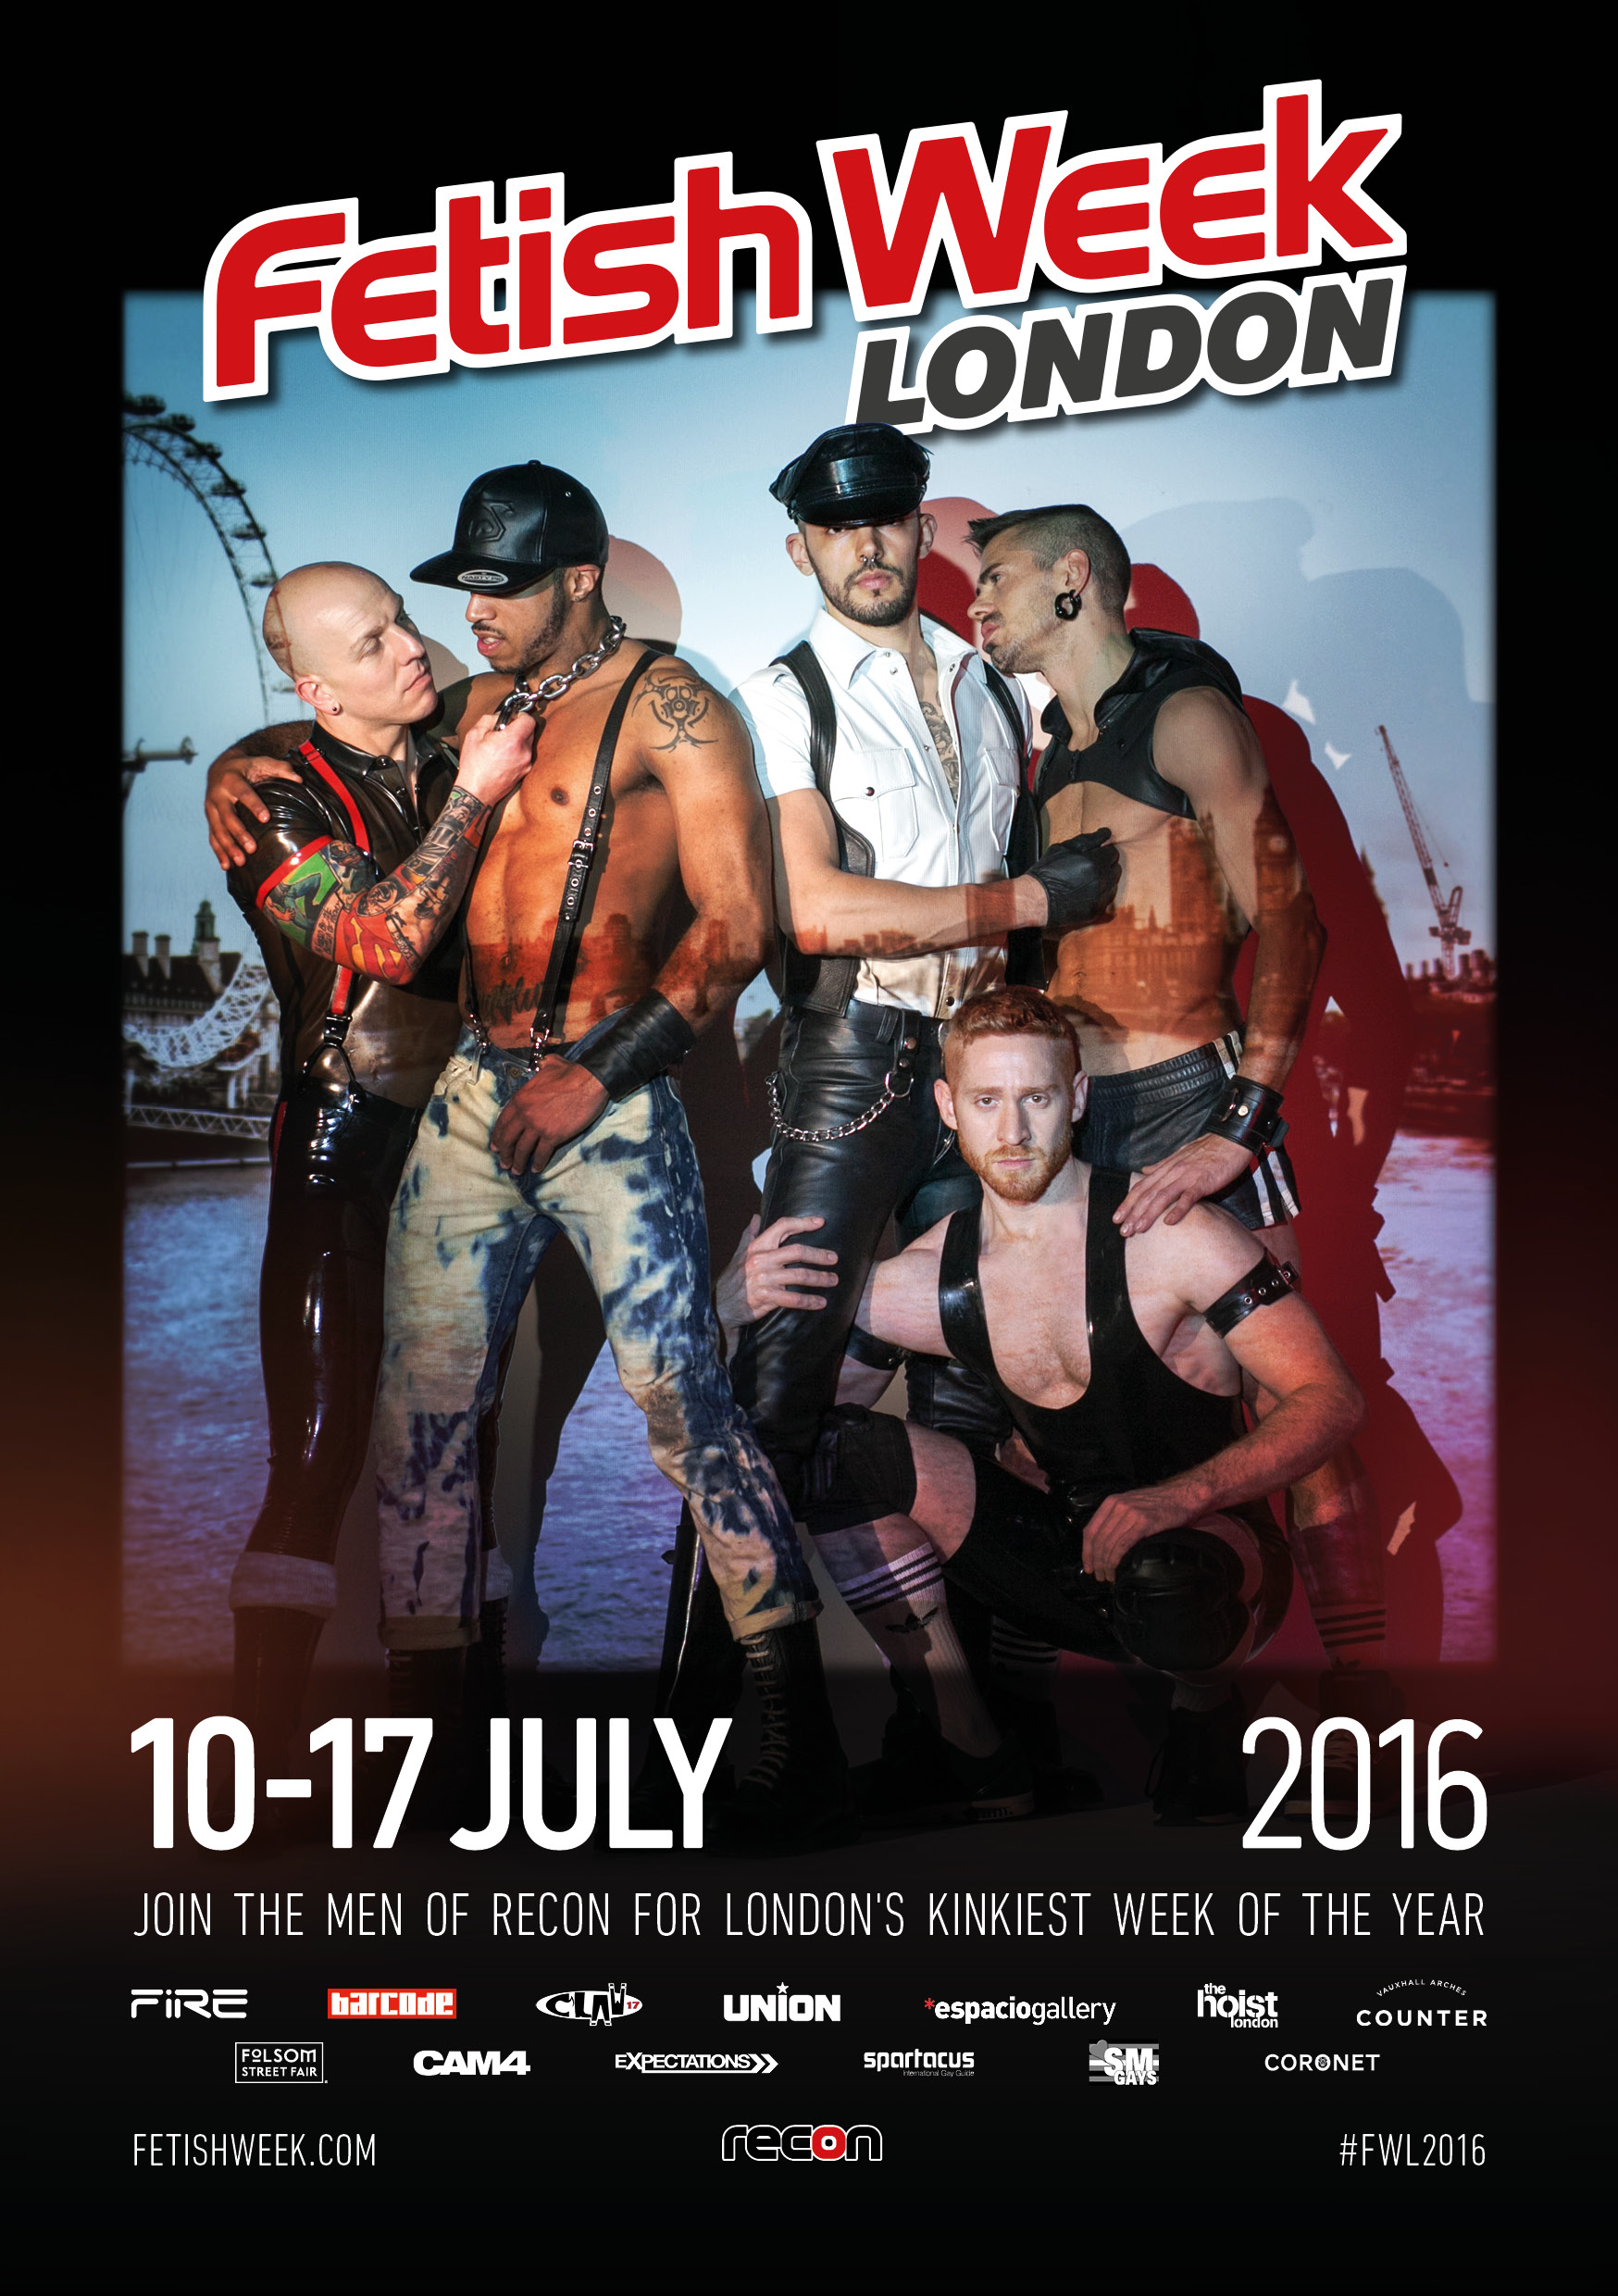 CAM4 Sponsors Fetish Week London 2016!